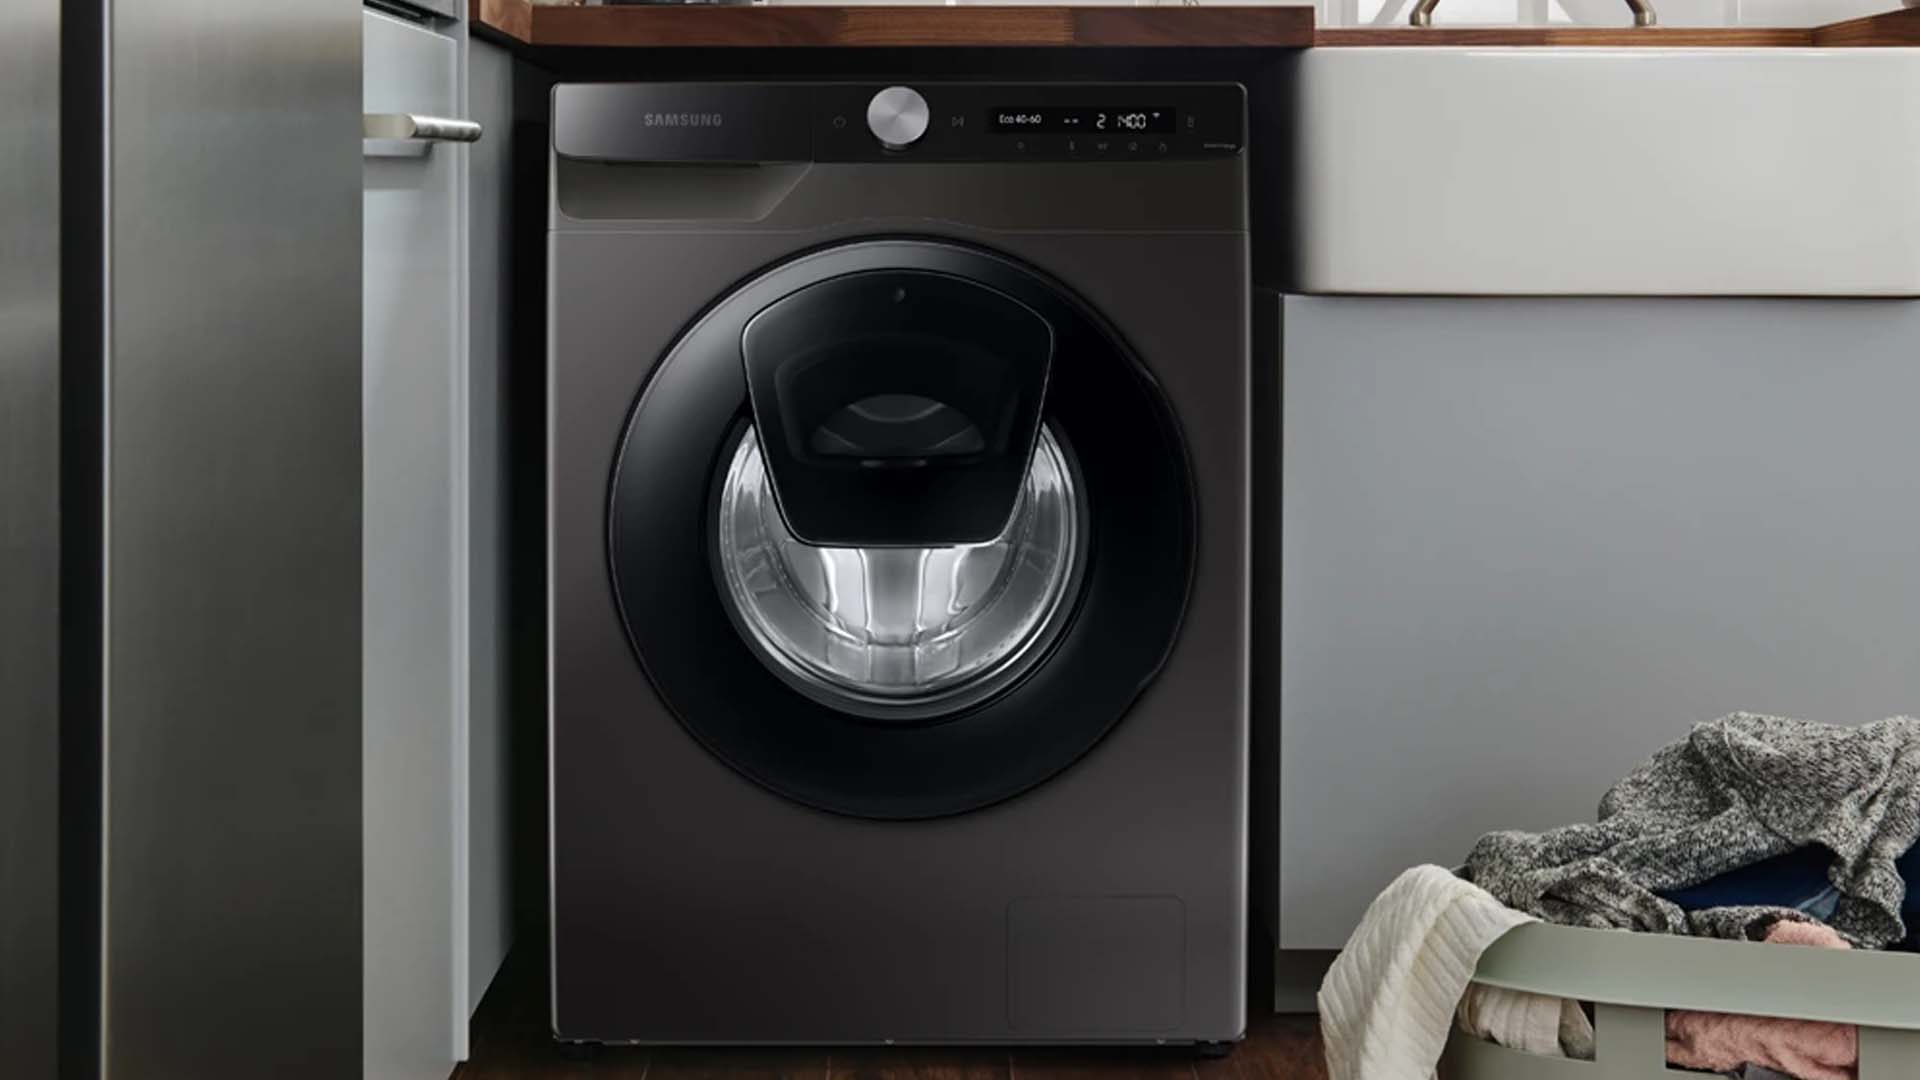 Samsung Washing Machine Repair | Samsung Appliance Repairs